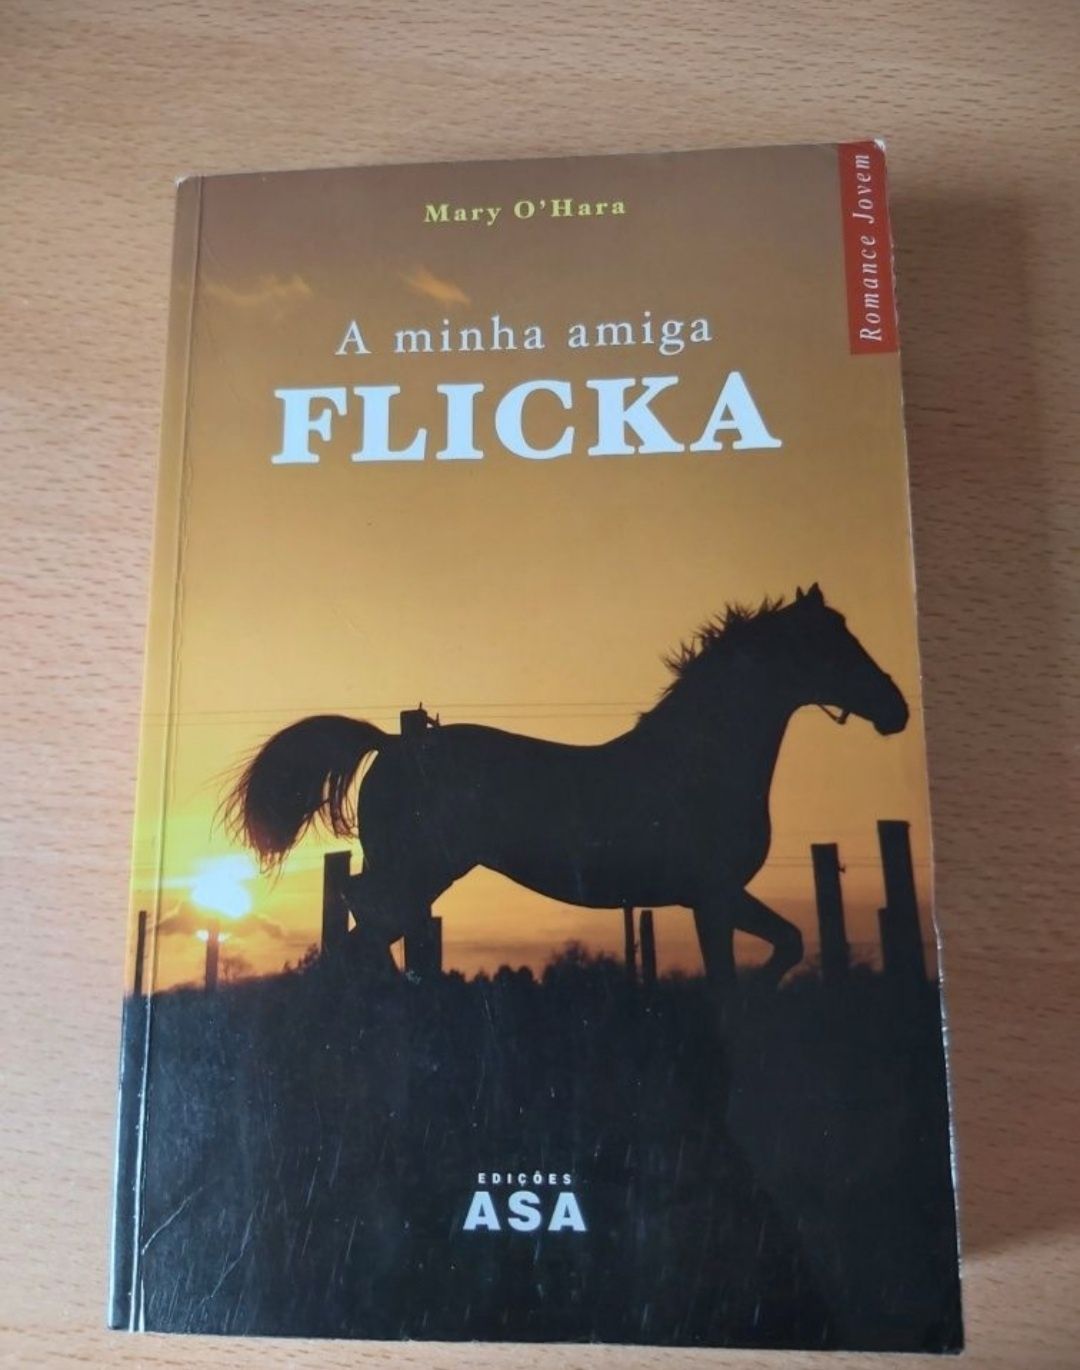 Livro "A Minha Amiga Flicka" - Mary O'Hara